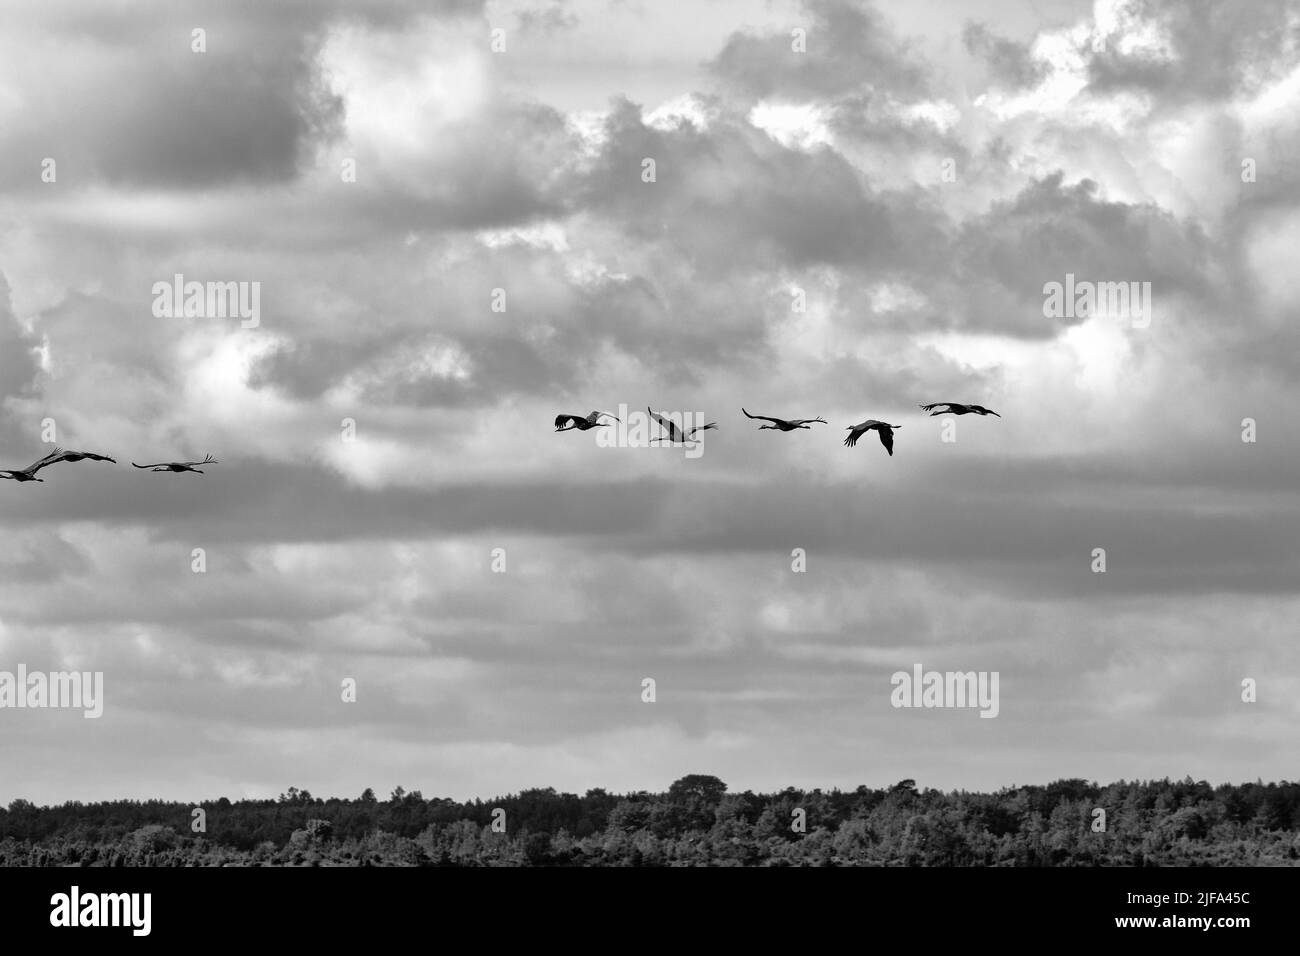 Grues volantes l'une derrière l'autre, grue commune (Grus Grus), migration d'oiseaux dans ciel nuageux, temps rêveur, SLite, baie boisée Vaegumeviken, Gotland Banque D'Images